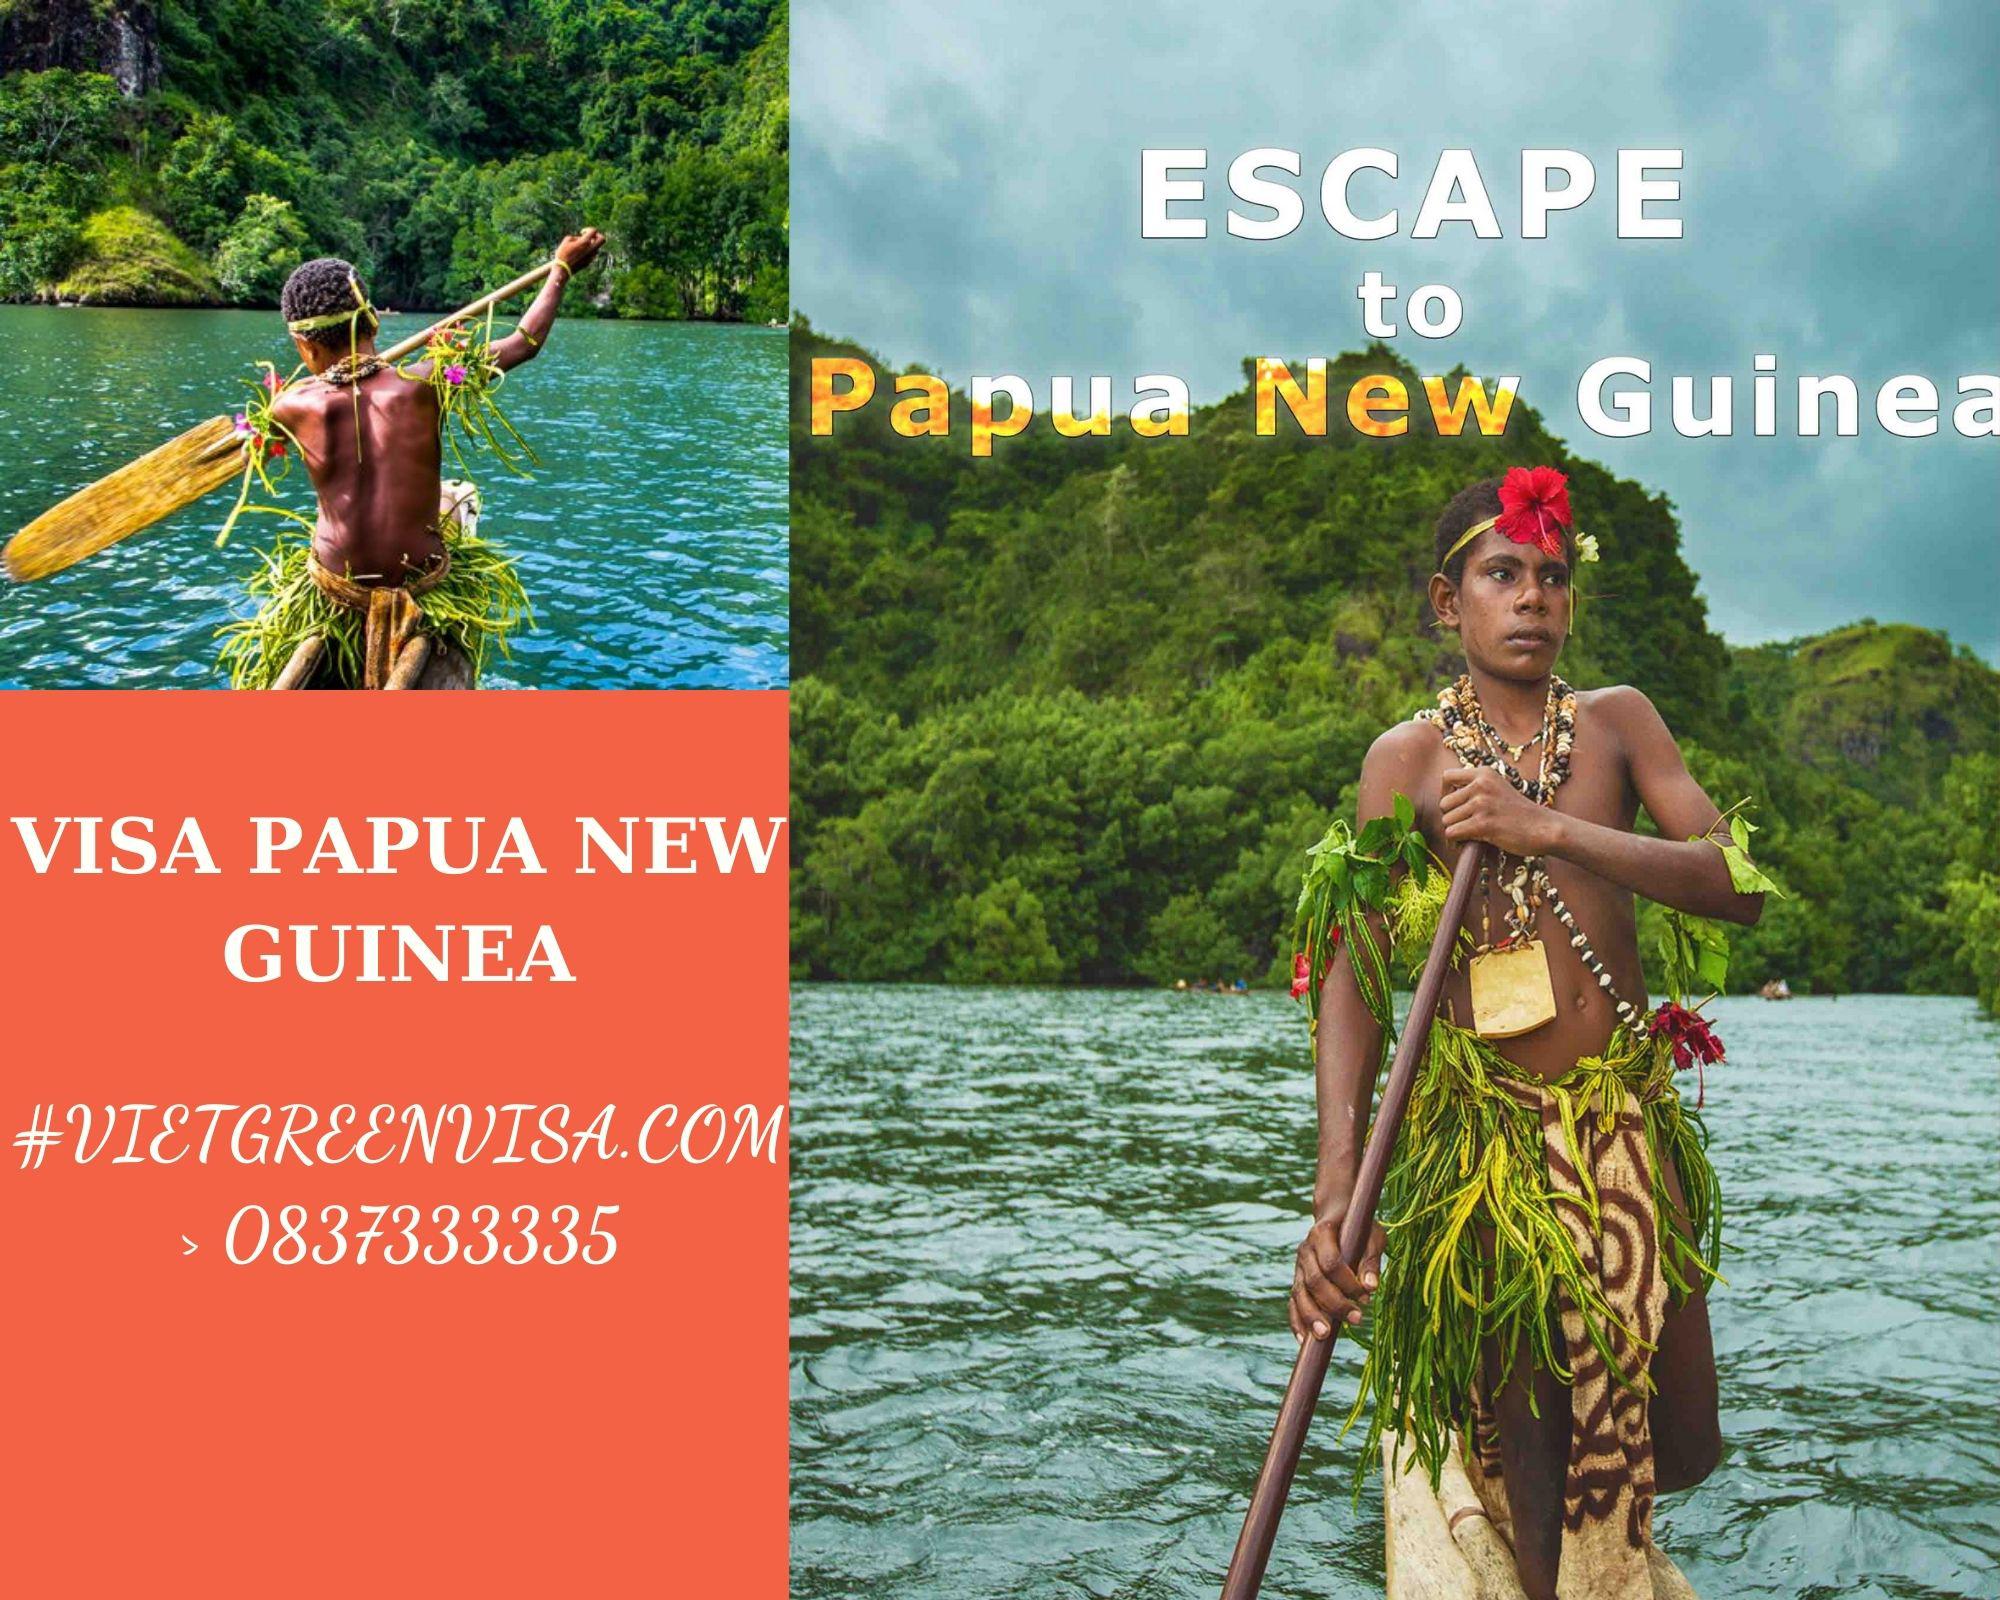 Dịch vụ xin Visa du lịch Papau New Guine uy tín, trọn gói